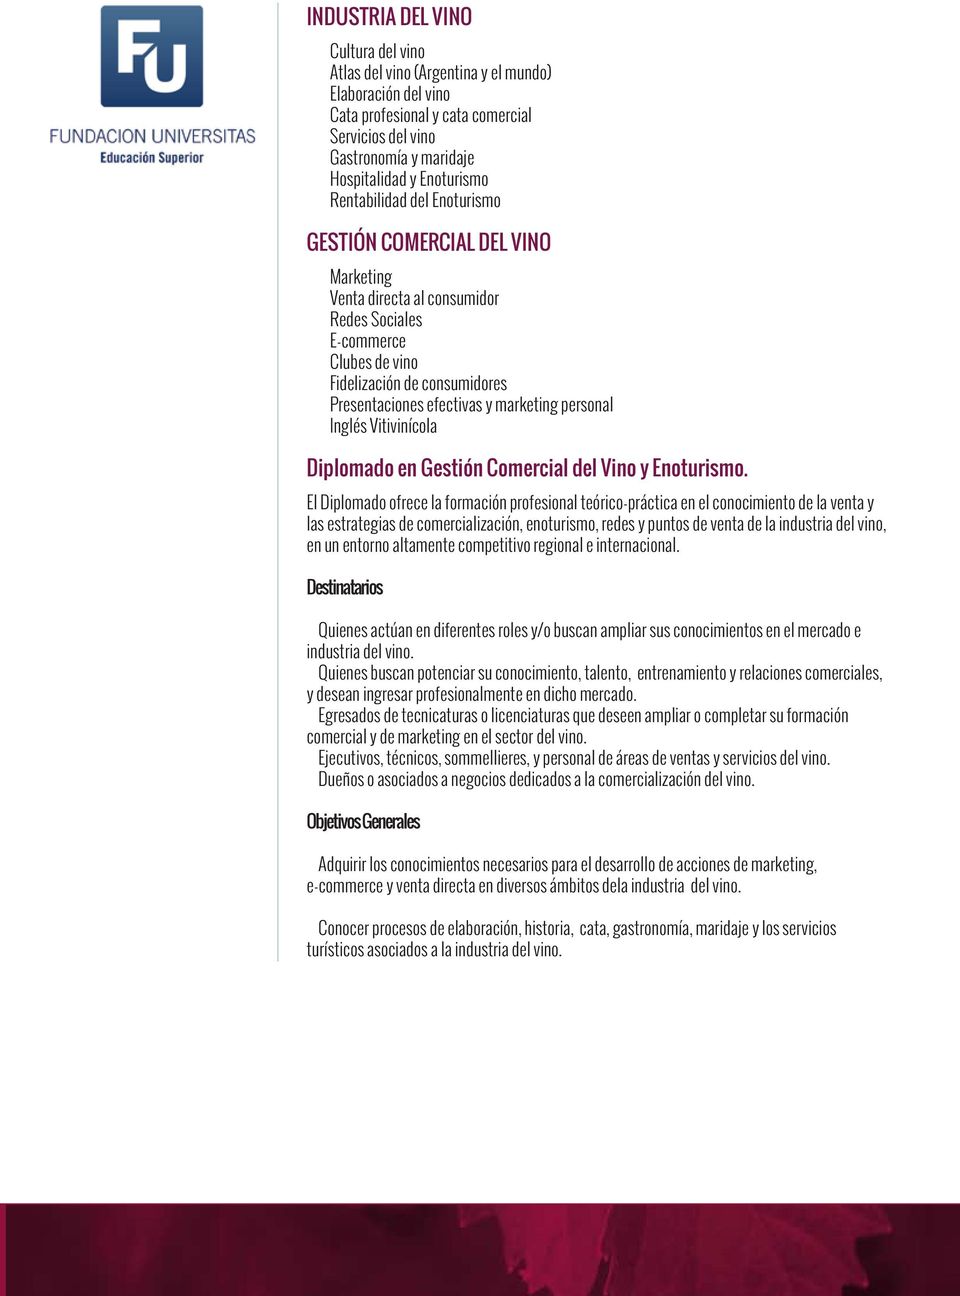 personal Inglés Vitivinícola Diplomado en Gestión Comercial del Vino y Enoturismo.